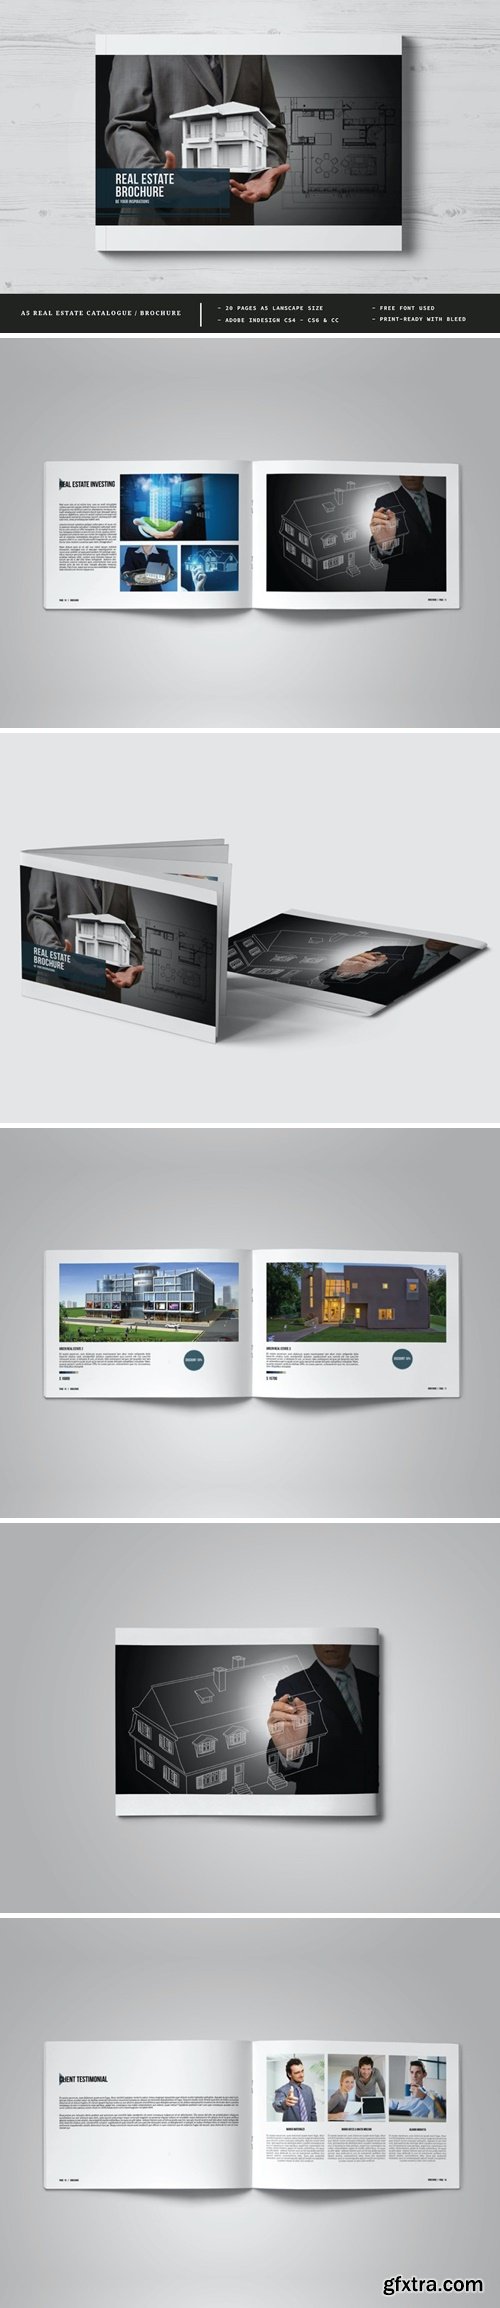 A5 Real Estate Catalogue / Brochure 3X8N2Q3